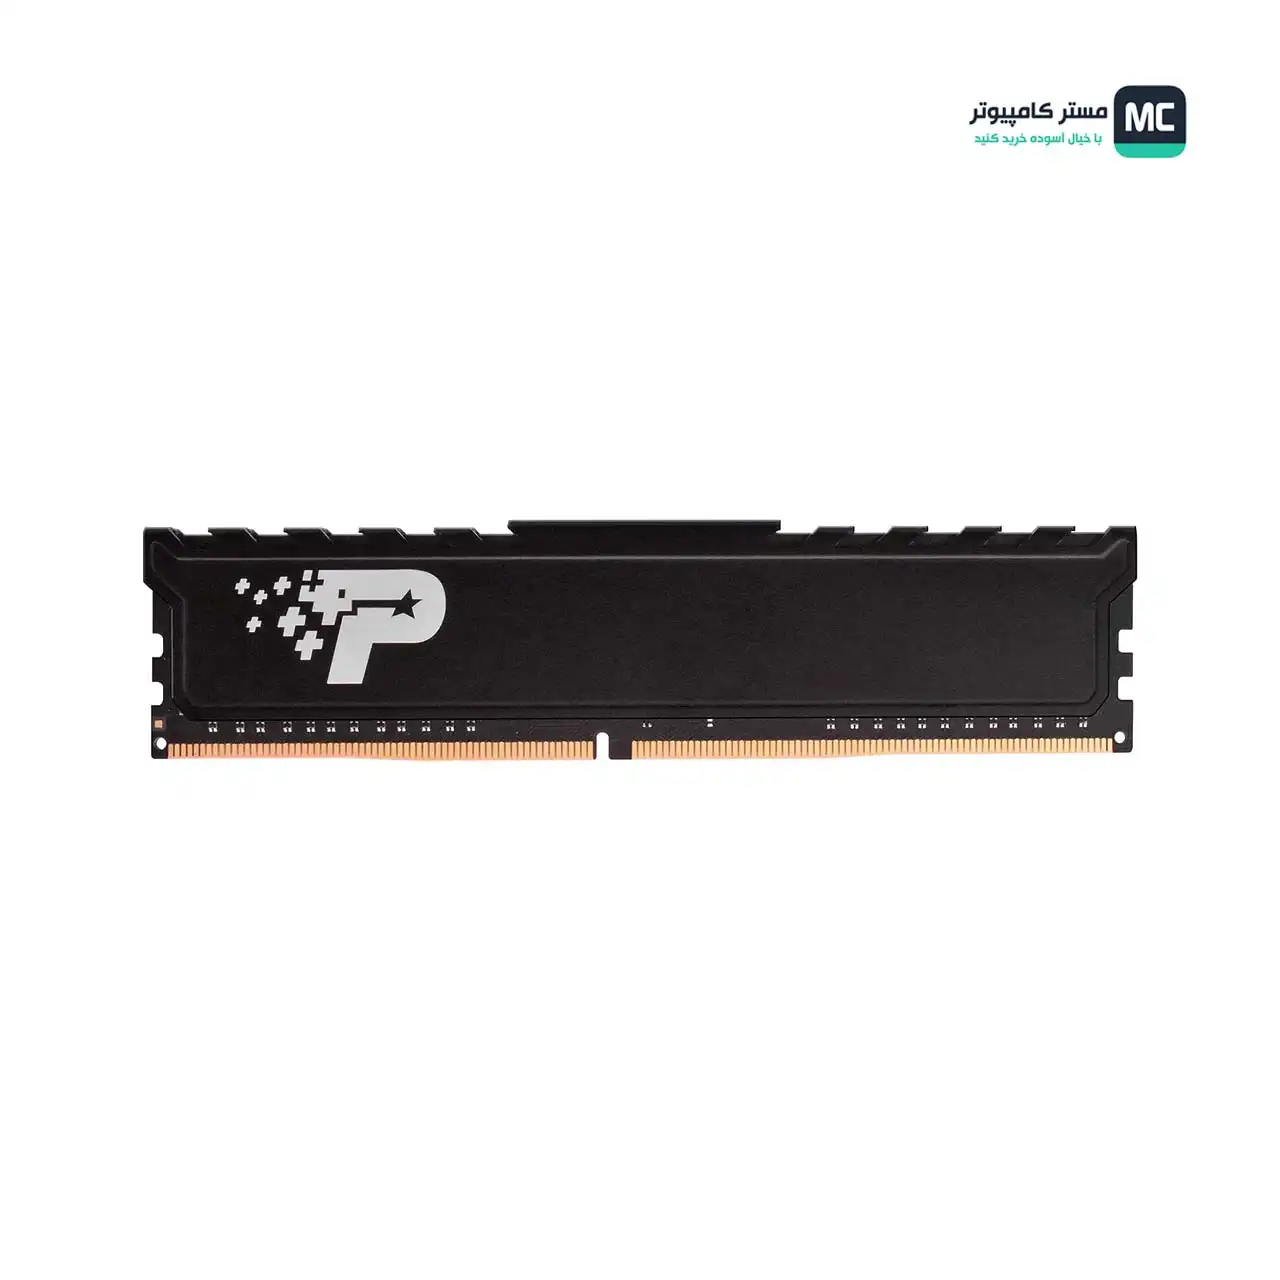 تصویر اصلی رم پاتریوت Signature Premium DDR4 8GB 3200MHz CL22